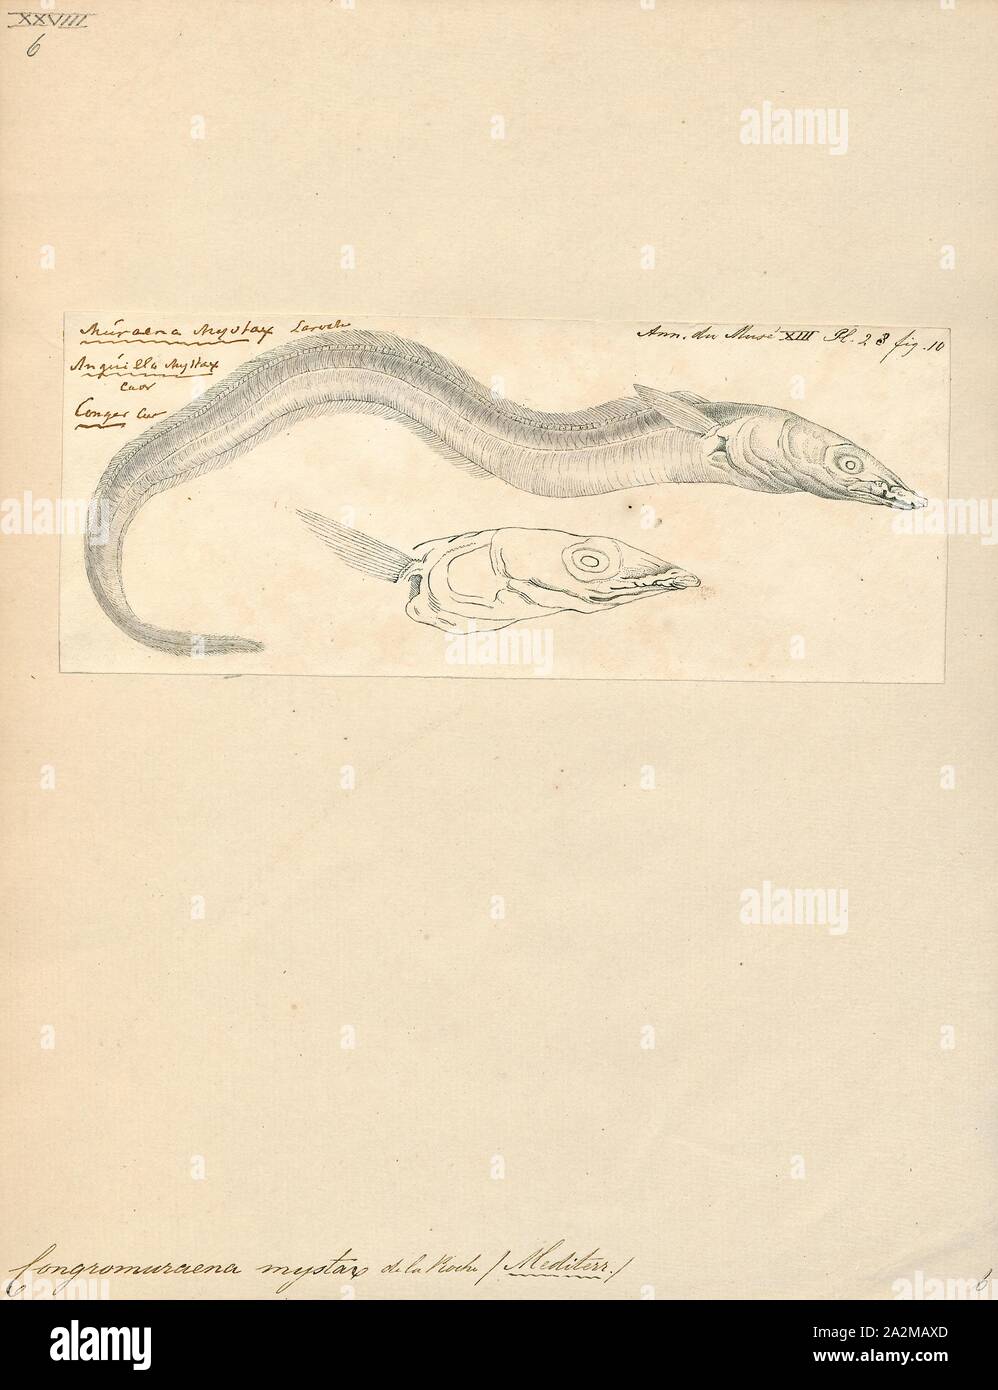 Congromuraena mystax, Ausdrucken, die Thinlip conger (Gnathophis mystax, auch als die Blacktailed conger bekannt) ist ein Aal in der Familie (Congridae conger/röhrenaale). Es wurde von François Étienne Delaroche im Jahre 1809 beschrieben, die ursprünglich unter der Gattung Muraena. Es ist ein subtropisches, marine Aal, die von der östlichen Atlantik bekannt ist, darunter im südlichen Portugal, dem Mittelmeerraum, und Marokko. Er wohnt in einer Tiefe von 75 - 800 Metern und bewohnt, Schlamm und Sand am Kontinentalhang. Männer können eine maximale Gesamtlänge von 60 Zentimetern erreichen, die aber mehr erreichen einen TL von 35 Zentimetern Stockfoto